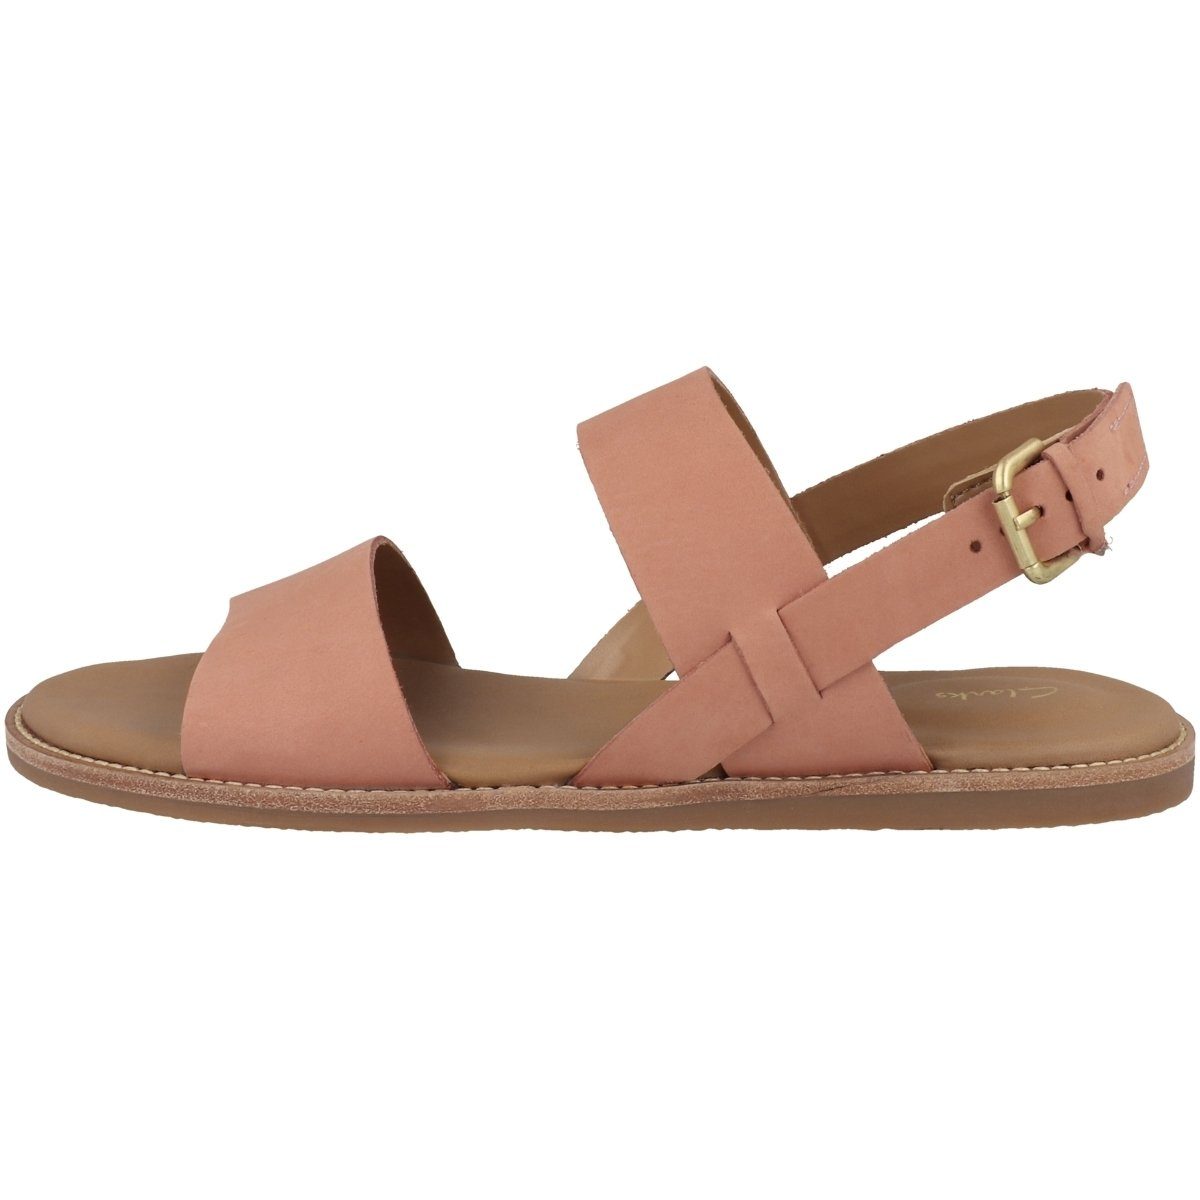 Clarks »Karsea Strap Damen« Sandale online kaufen | OTTO